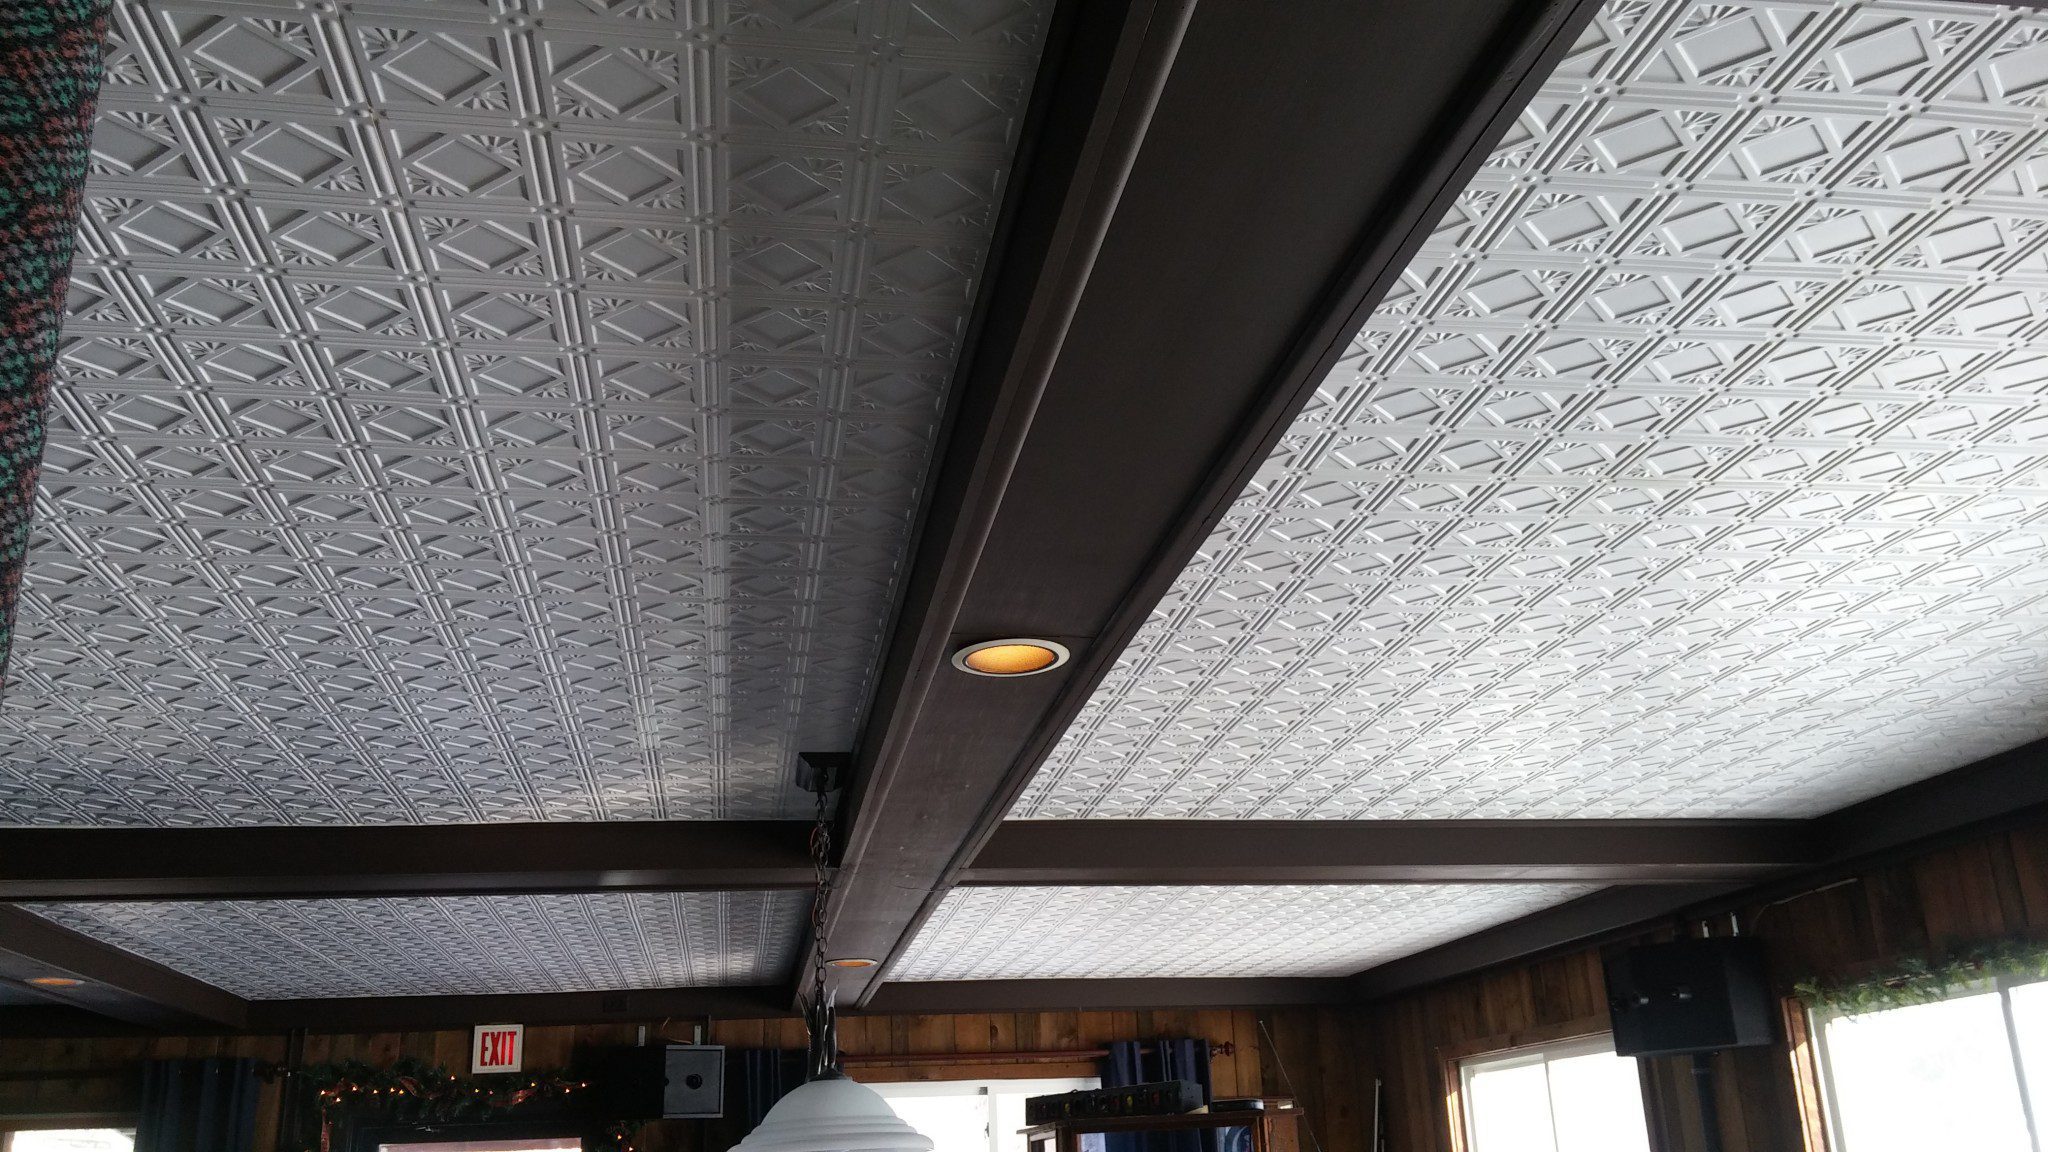 Tin Ceiling Panels For a Unique Backsplash